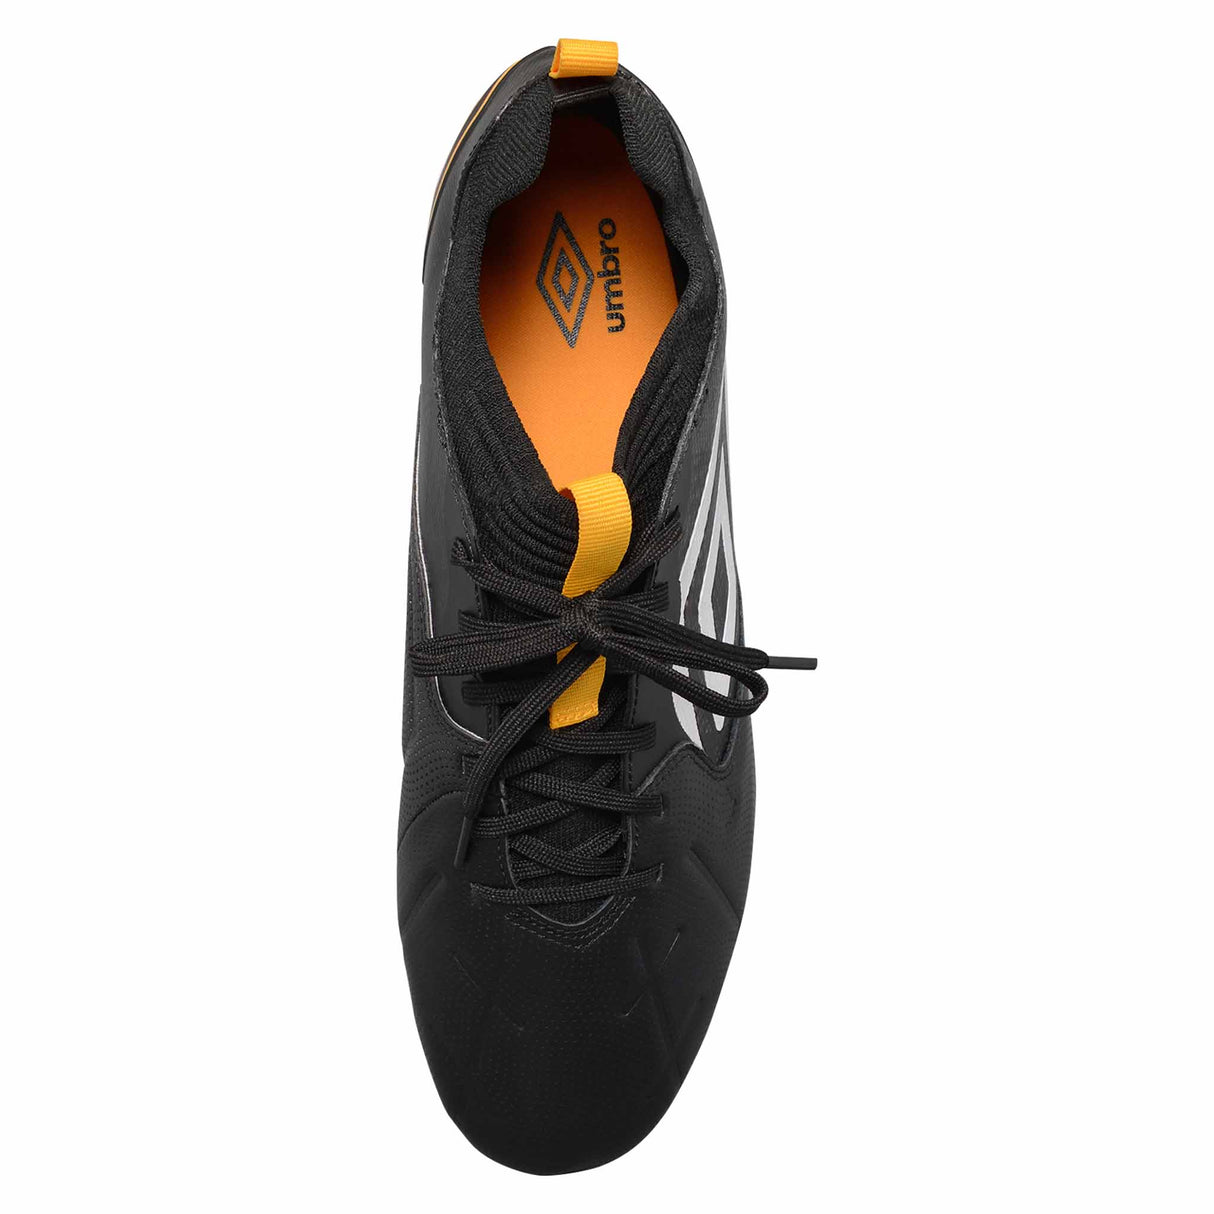 Umbro Tocco II Premier FG chaussures de soccer adulte - Noir / Safran